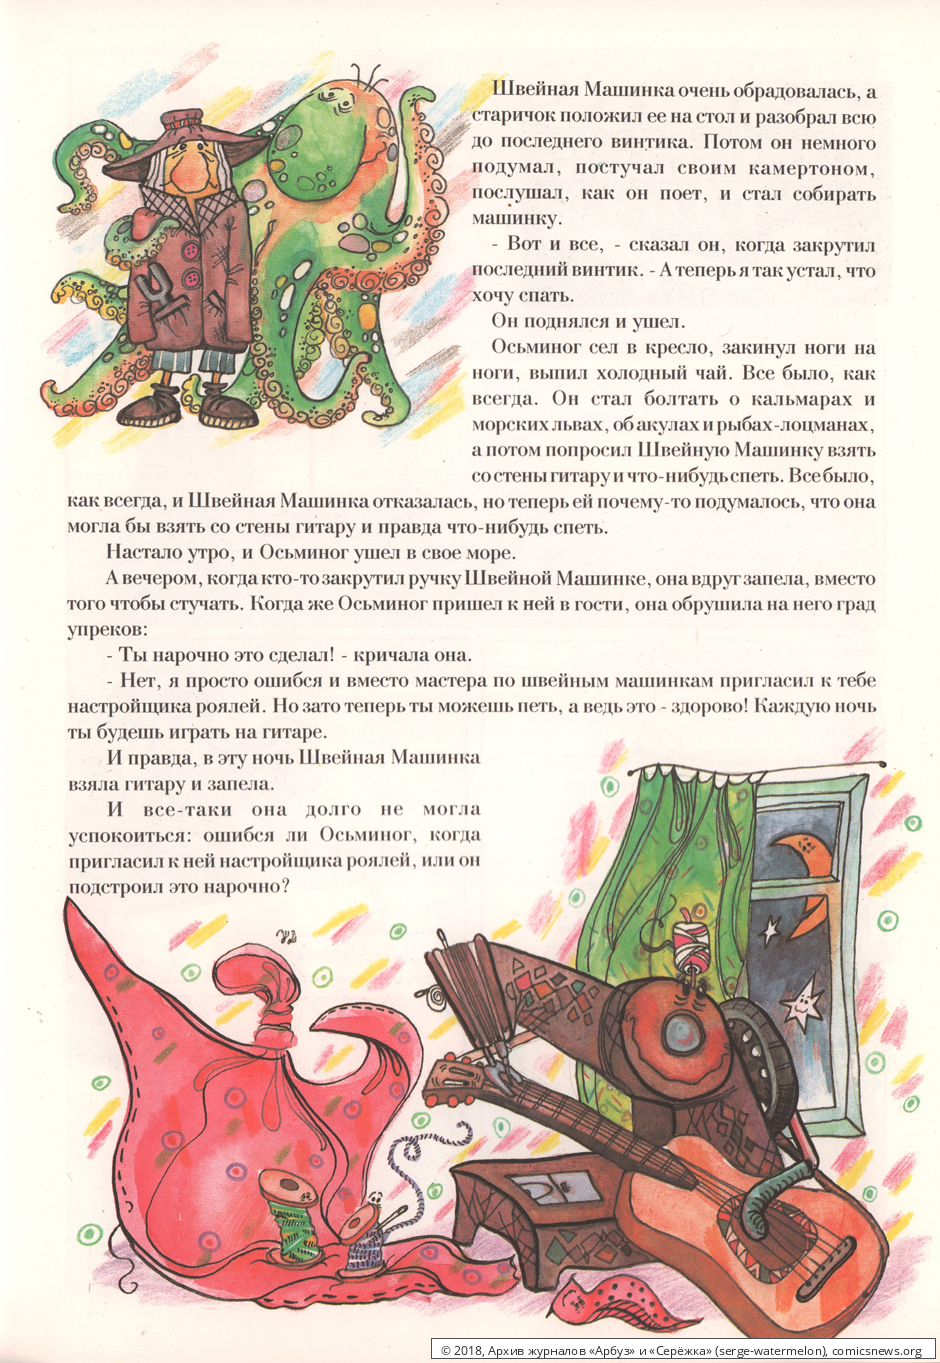 № 8 ("Серёжка" № 6 / 1995) - Архив журналов «Арбуз» и «Серёжка»